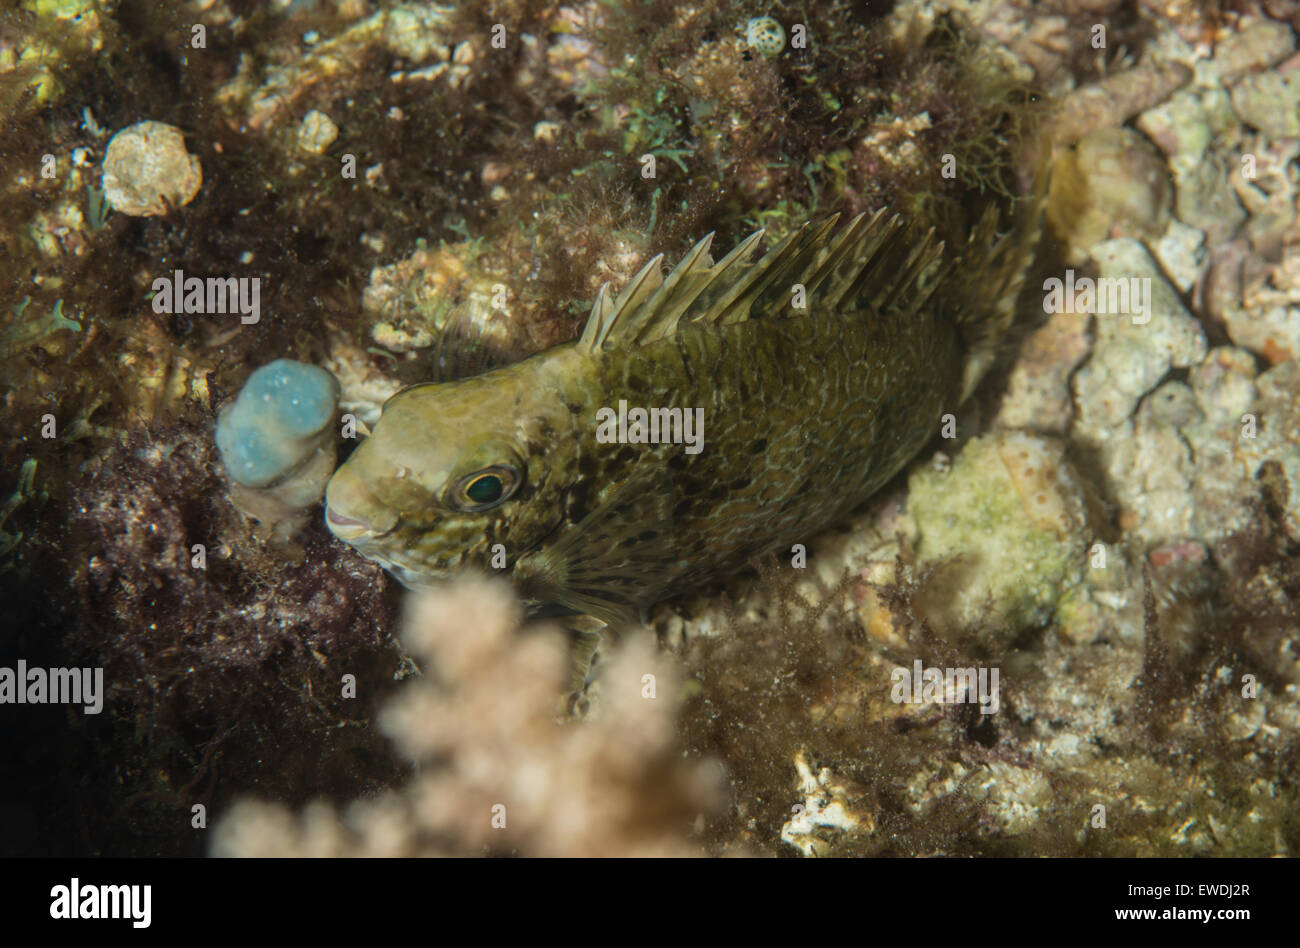 Rabbitfish camouflaged on the ocean floor Stock Photo